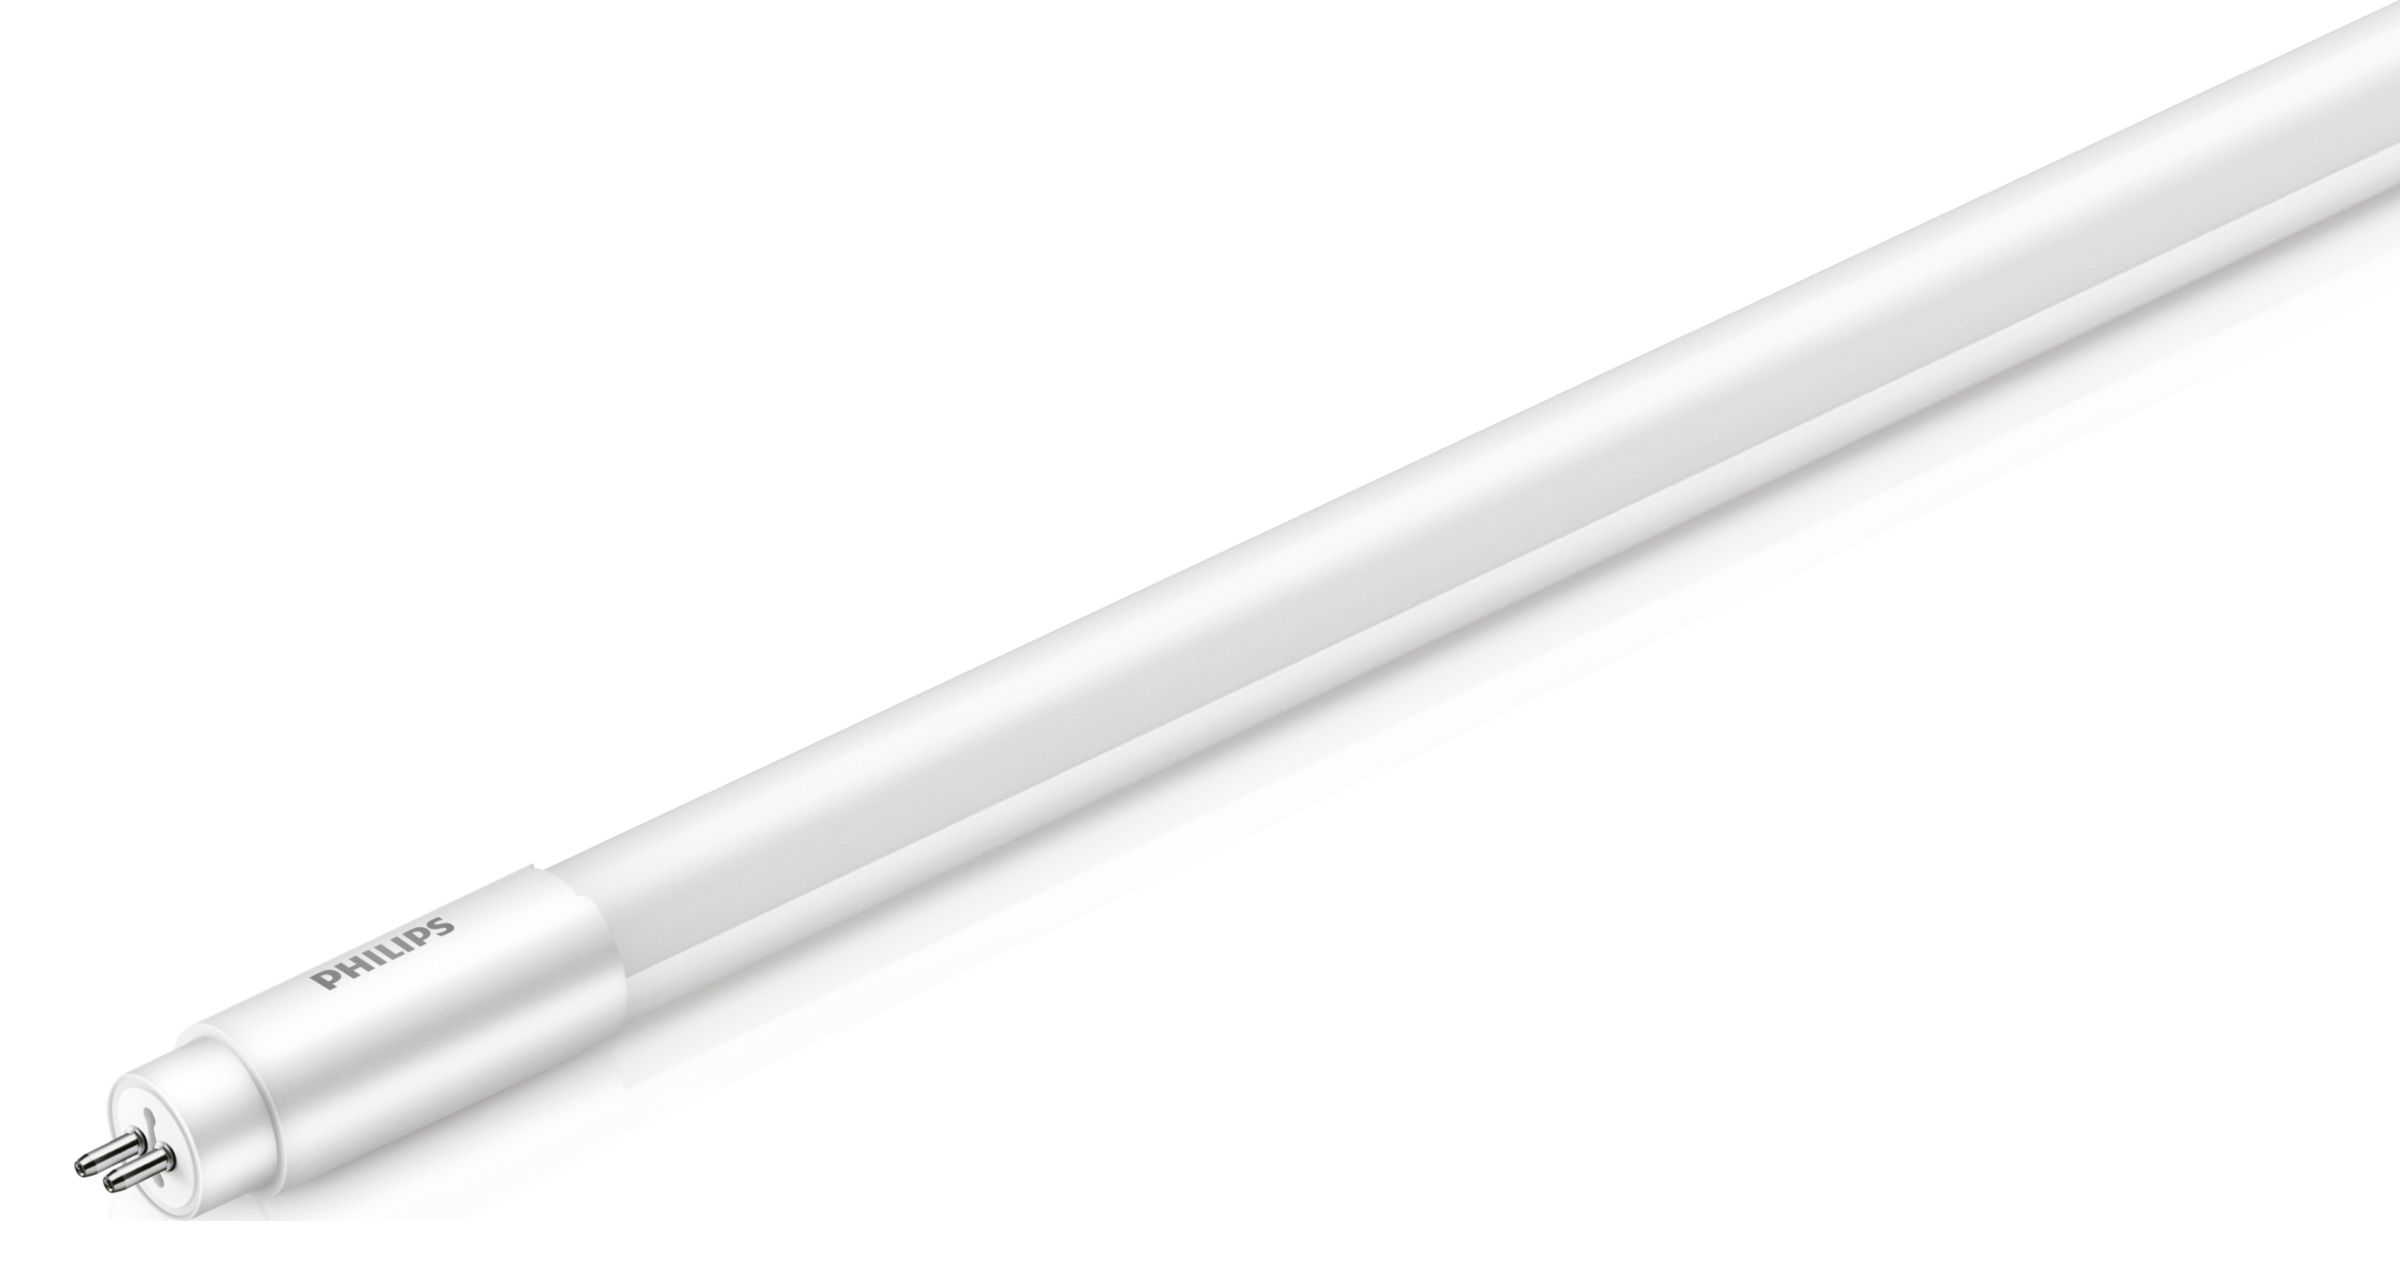 storting Betasten Dusver Essential LED tubes T5 Mains | 6979513 | Philips lighting